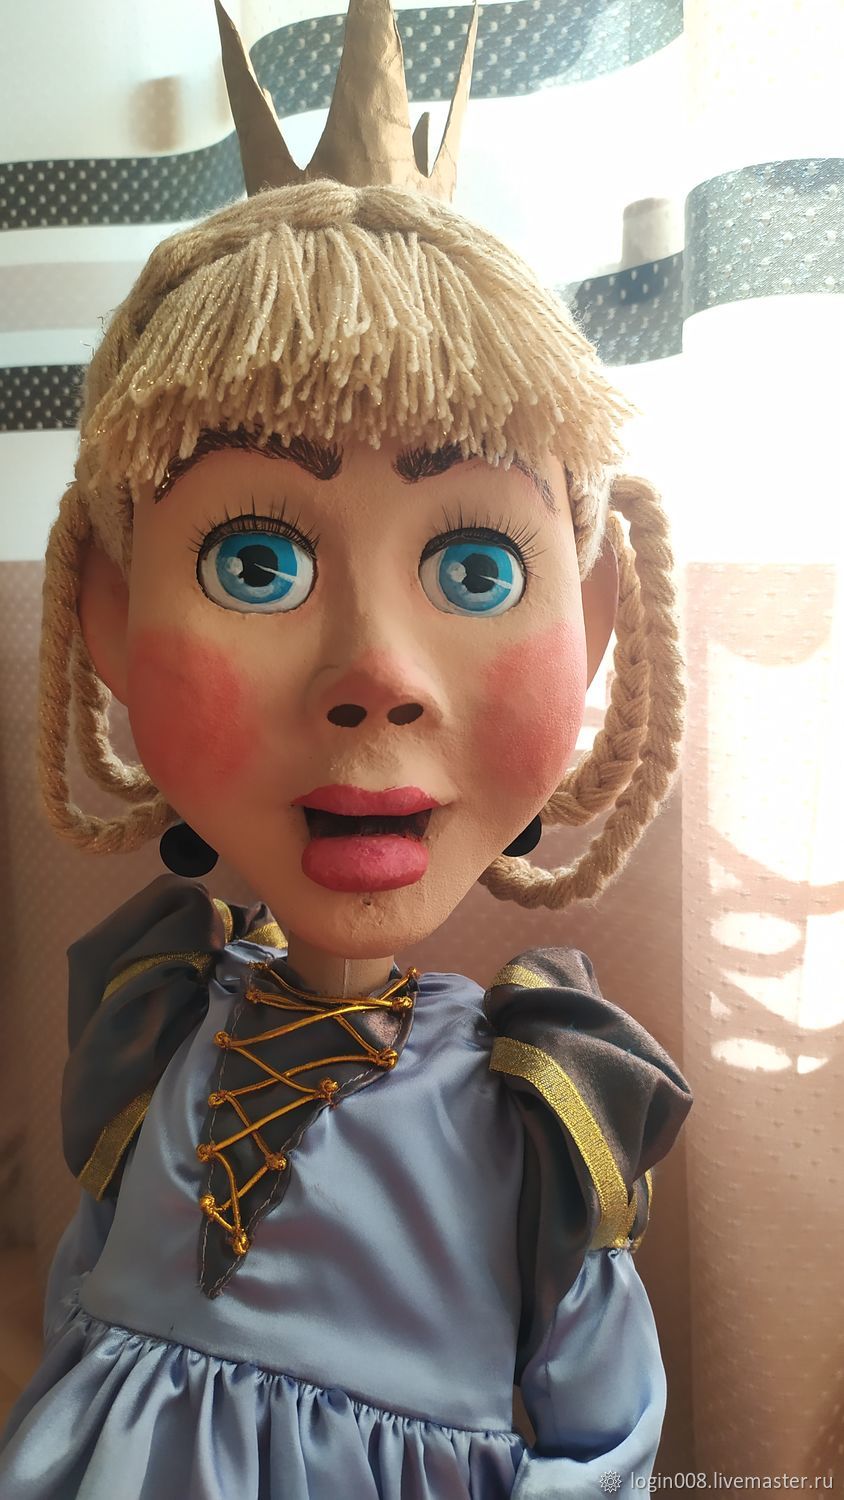 Публикация «Перчаточные куклы для кукольного театра» размещена в разделах